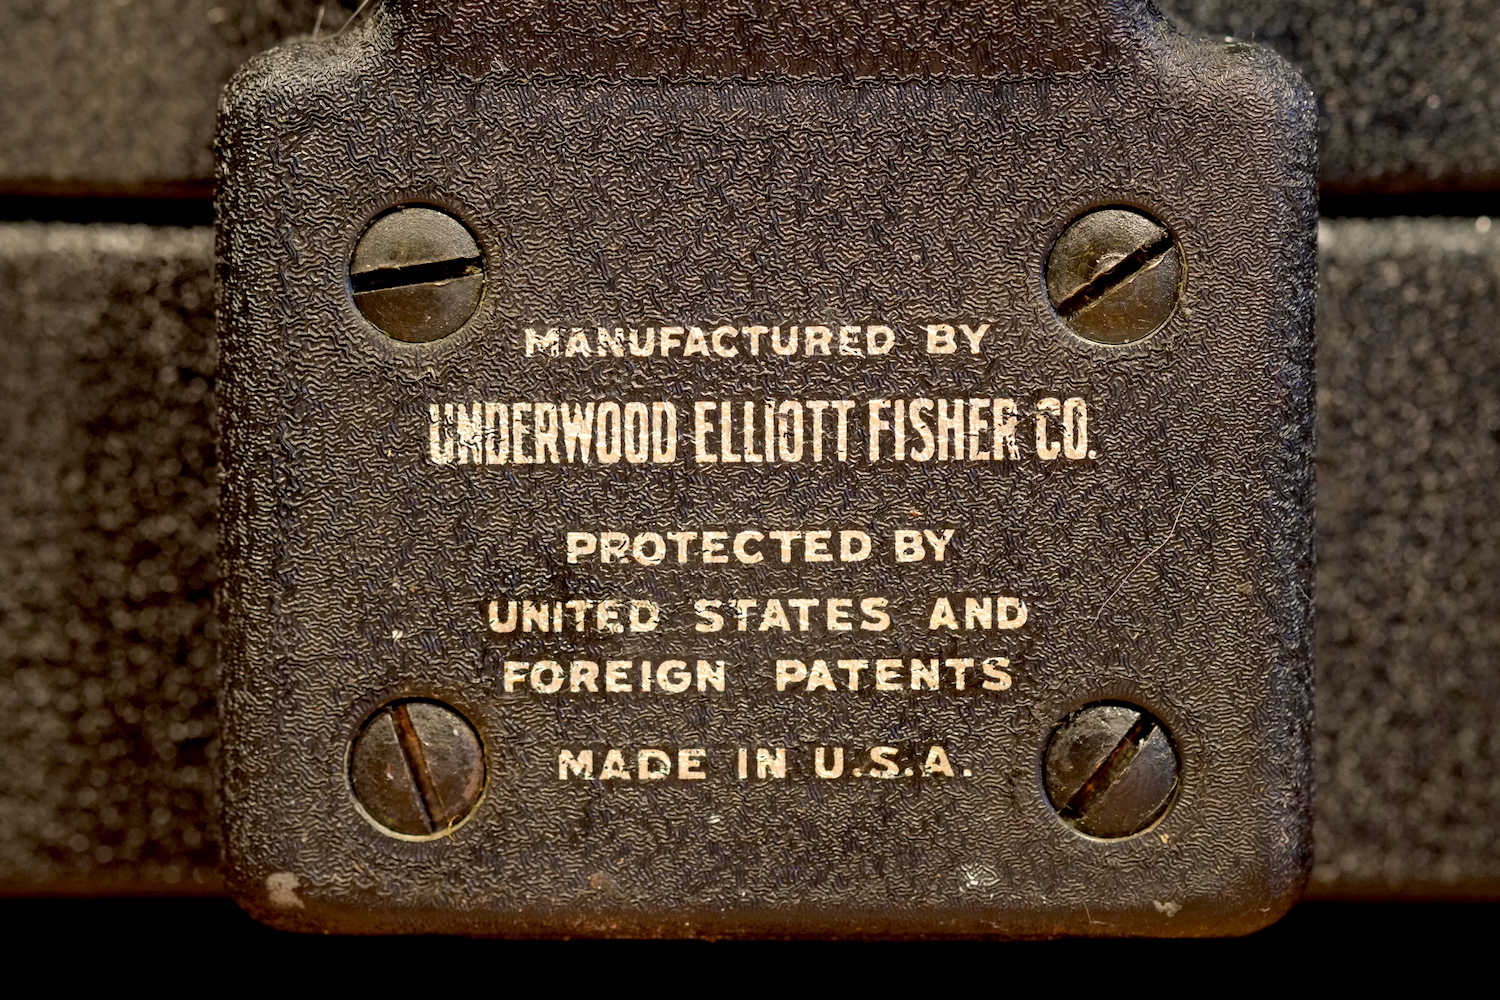 Пищущая печатная машинка Underwood Standard S